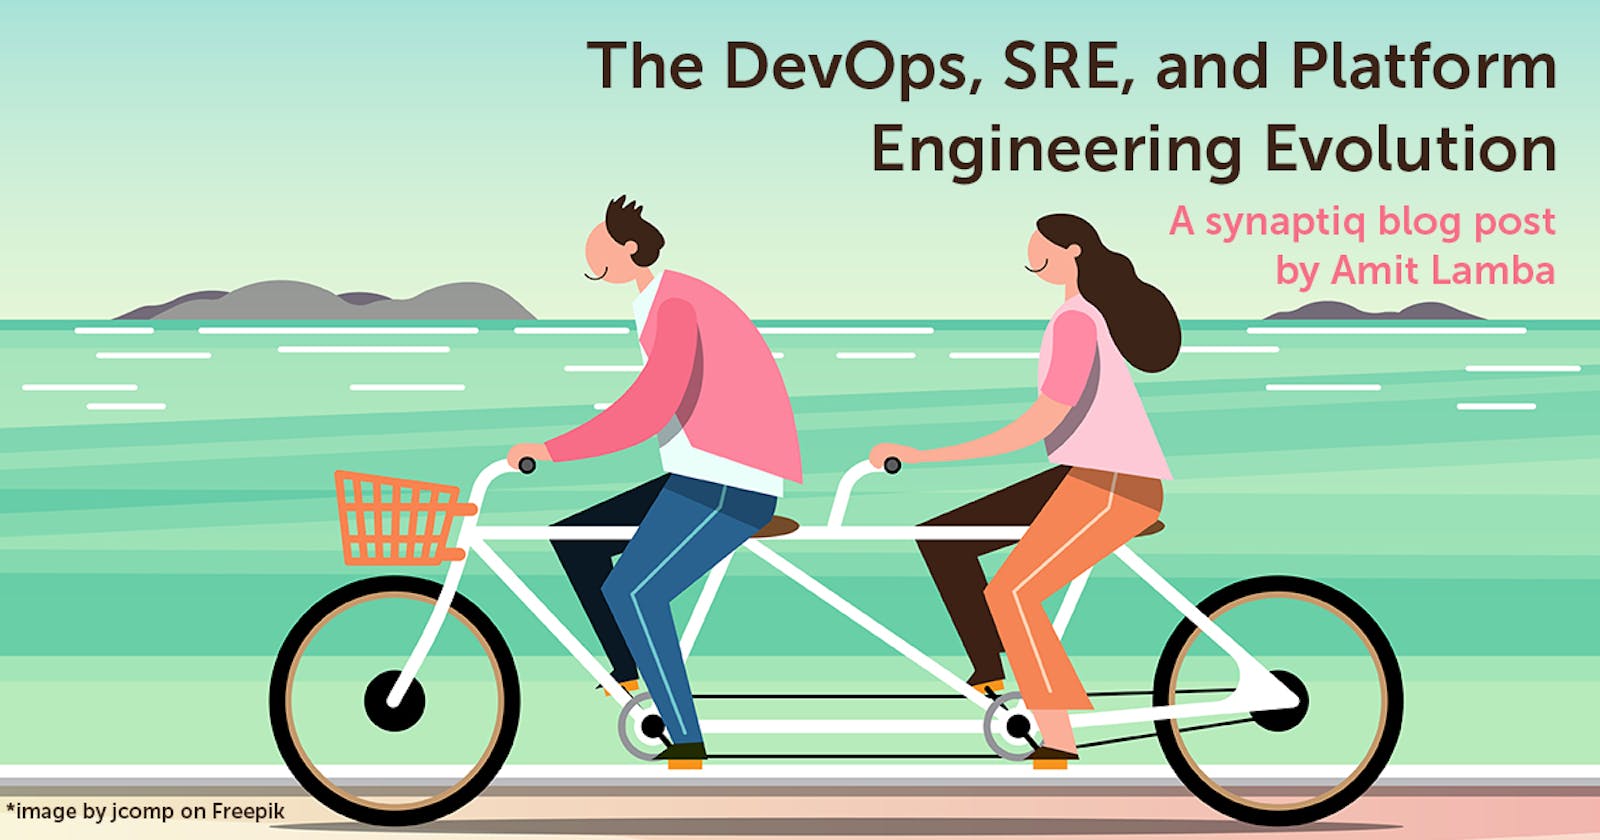 The DevOps, SRE, and Platform Engineering Evolution